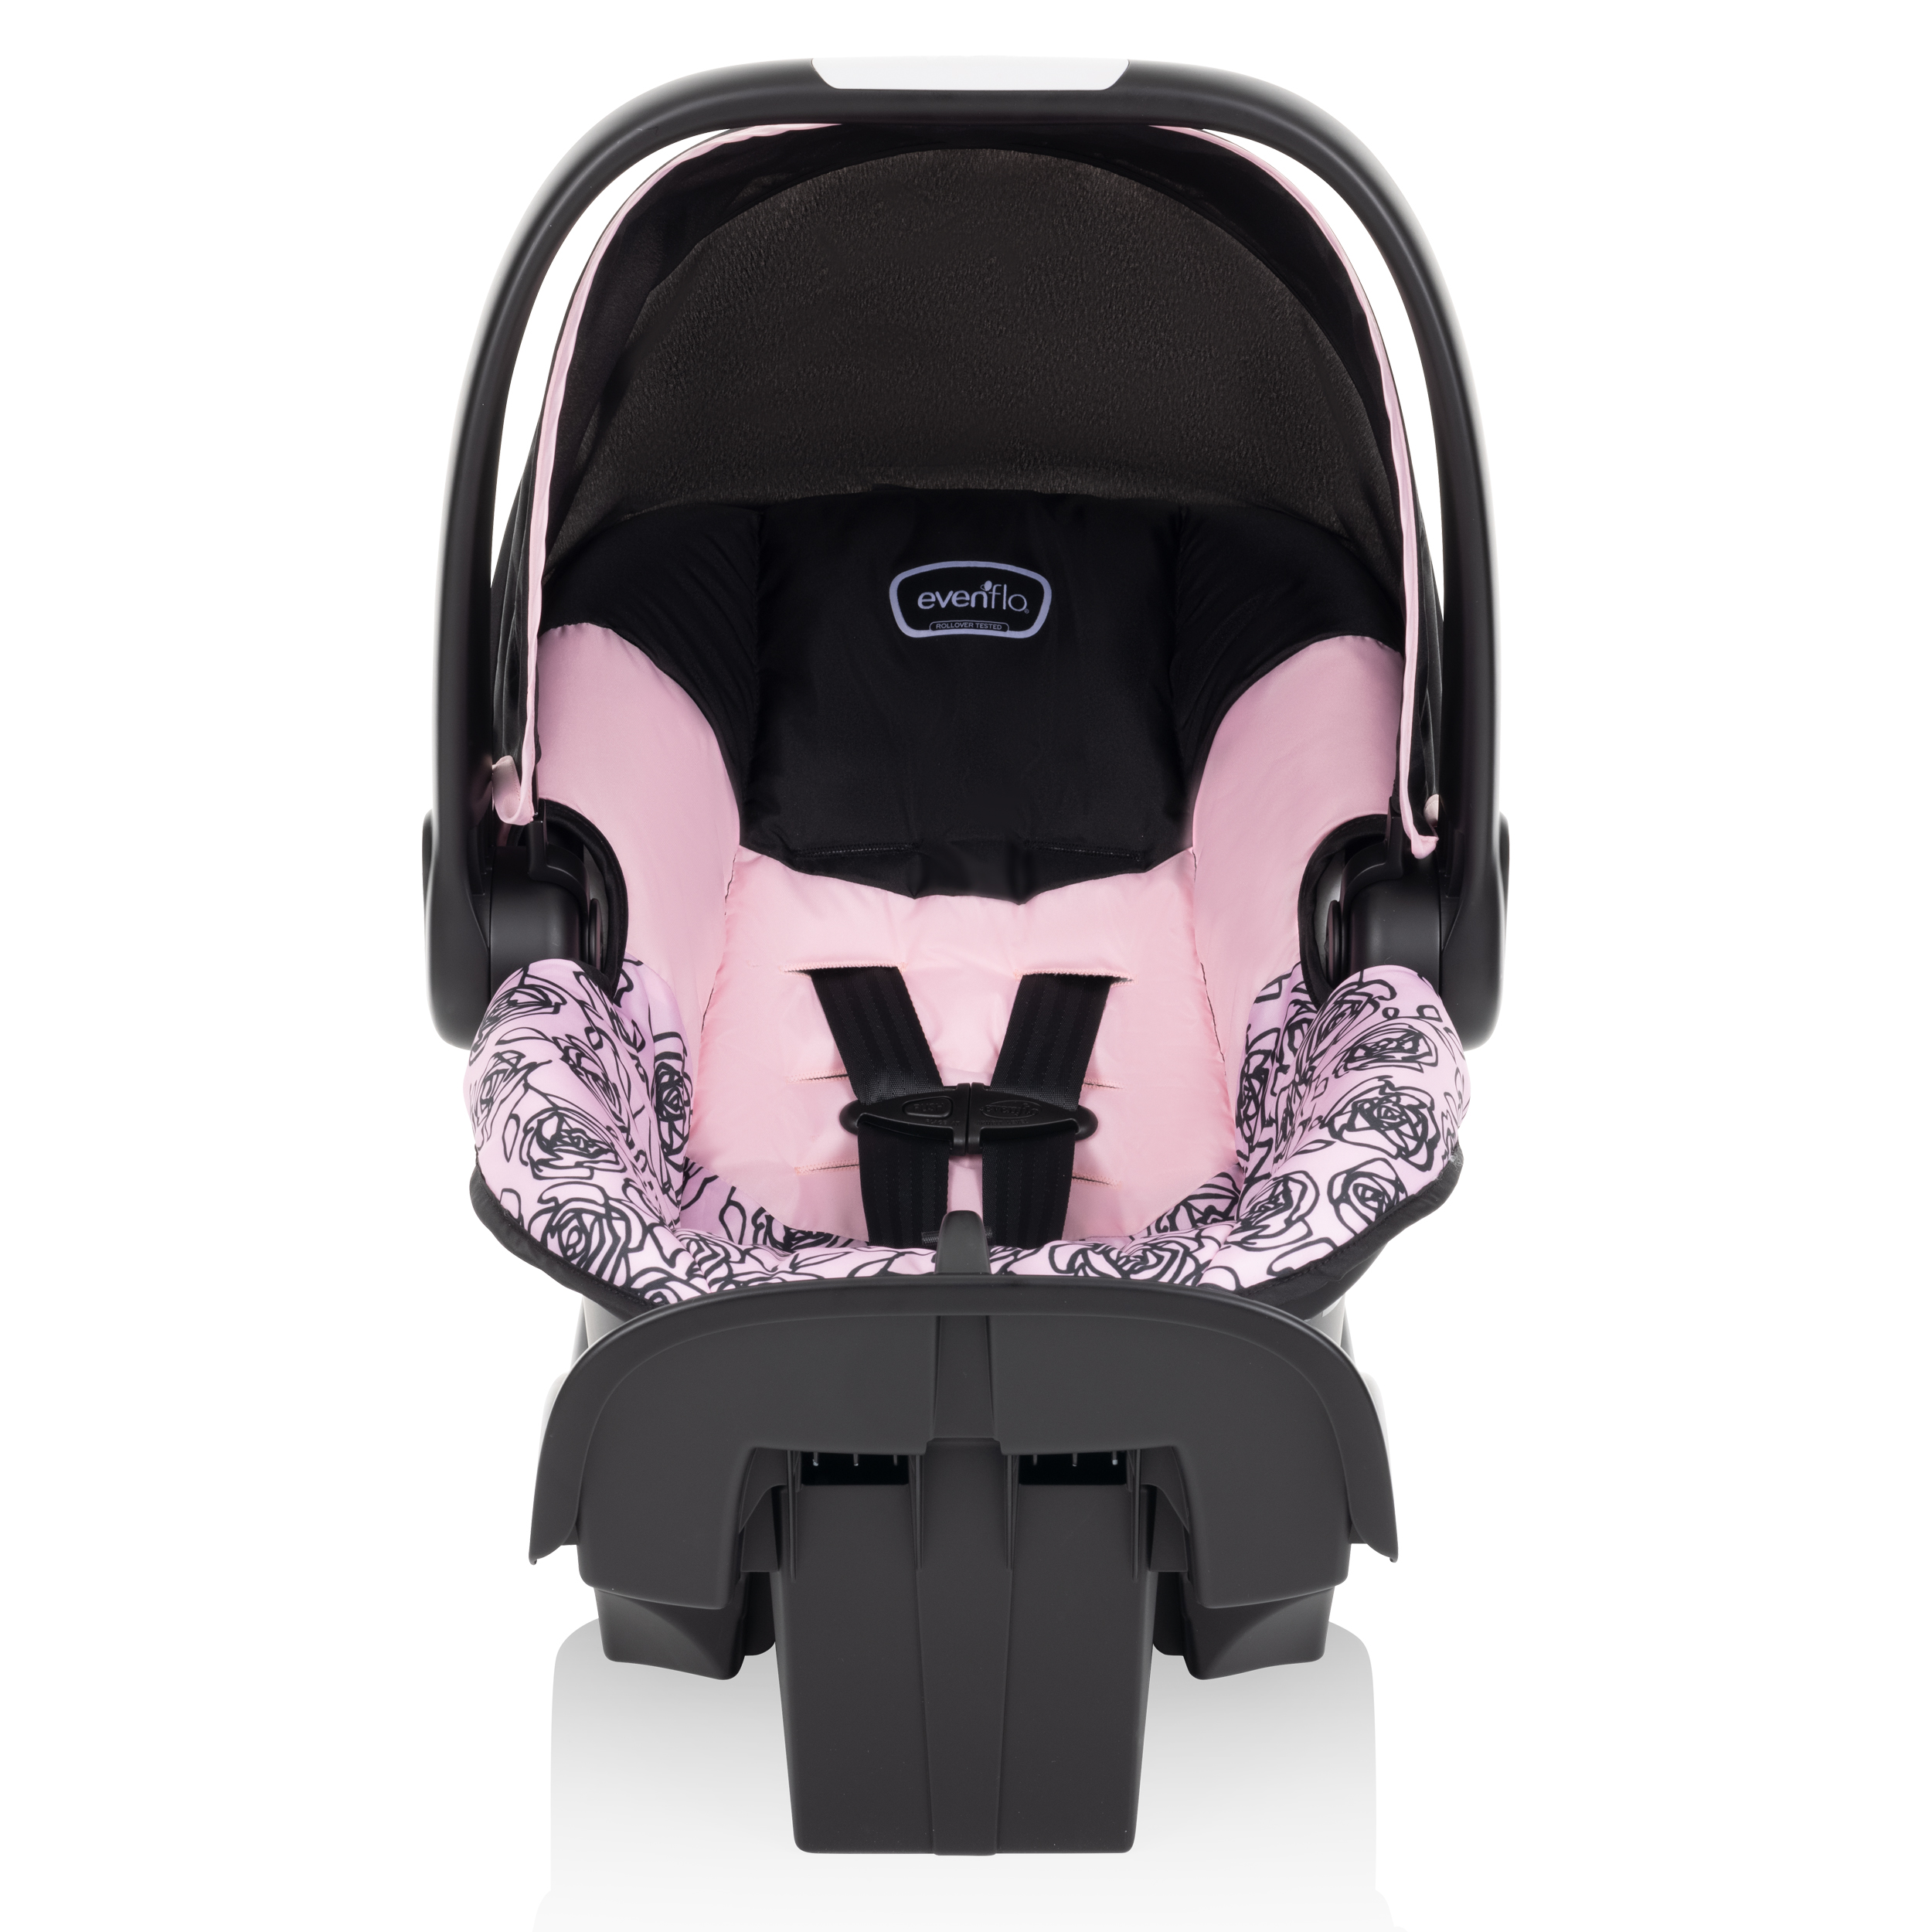 NurtureMax Infant Car Seat (Lennon Pink) - image 1 of 17